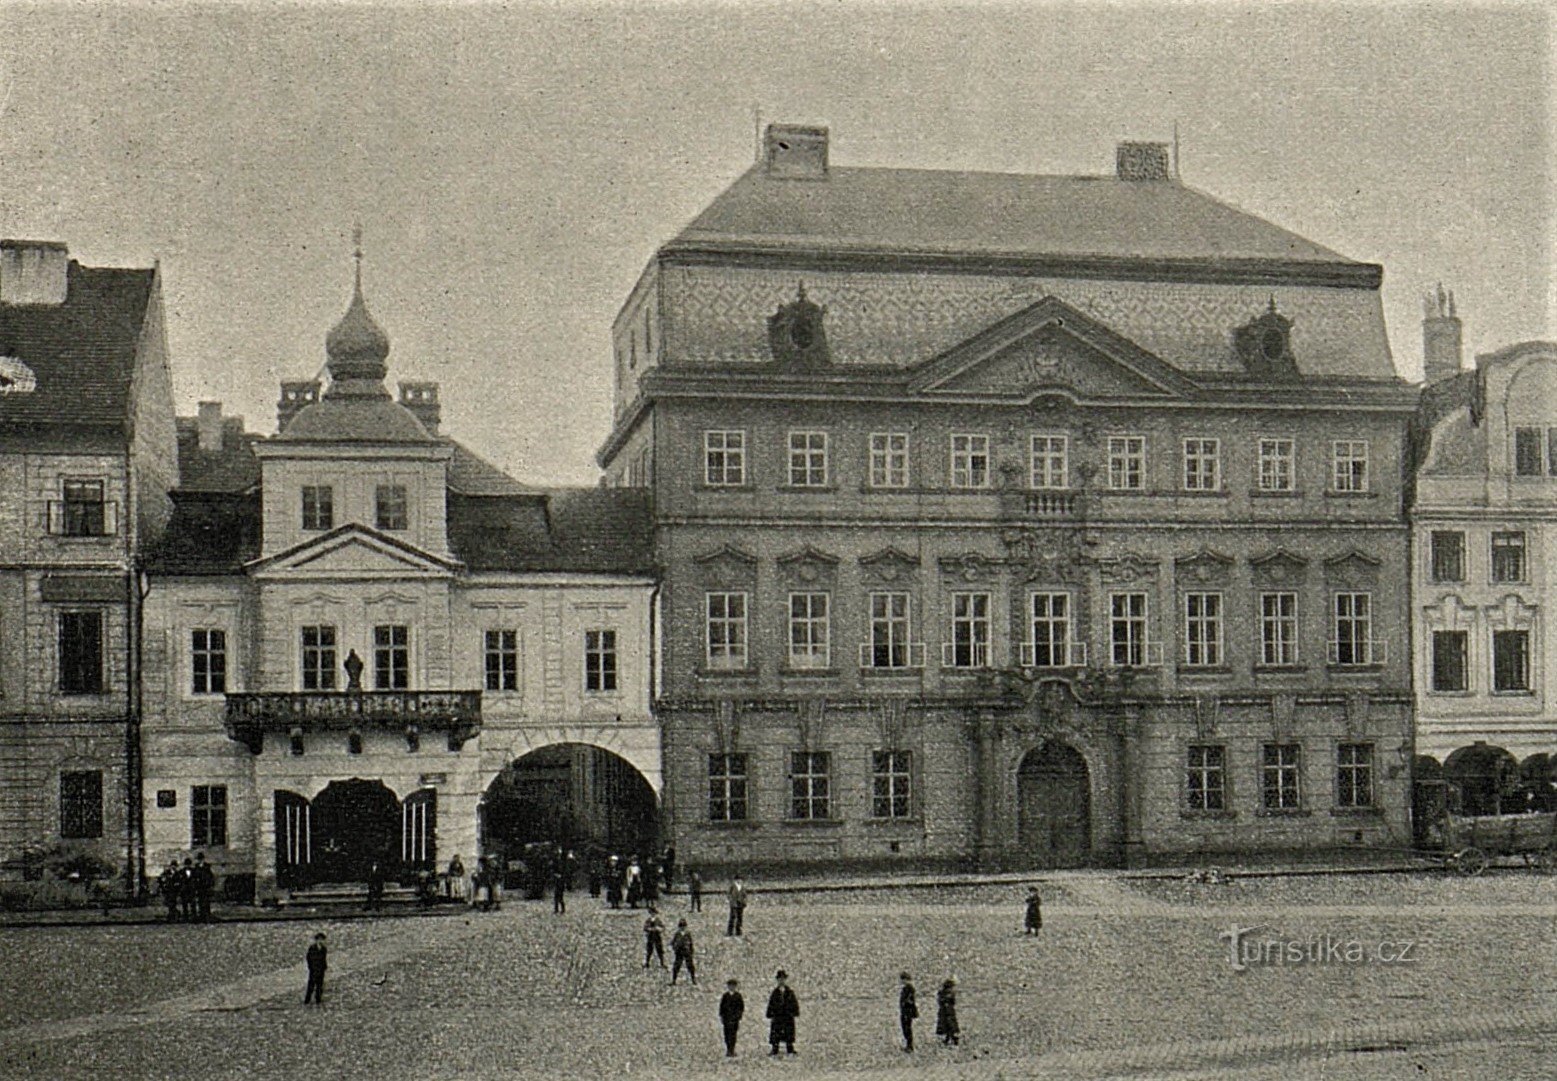 Casa U Špuláků e residenza vescovile a Hradec Králové prima del 1904